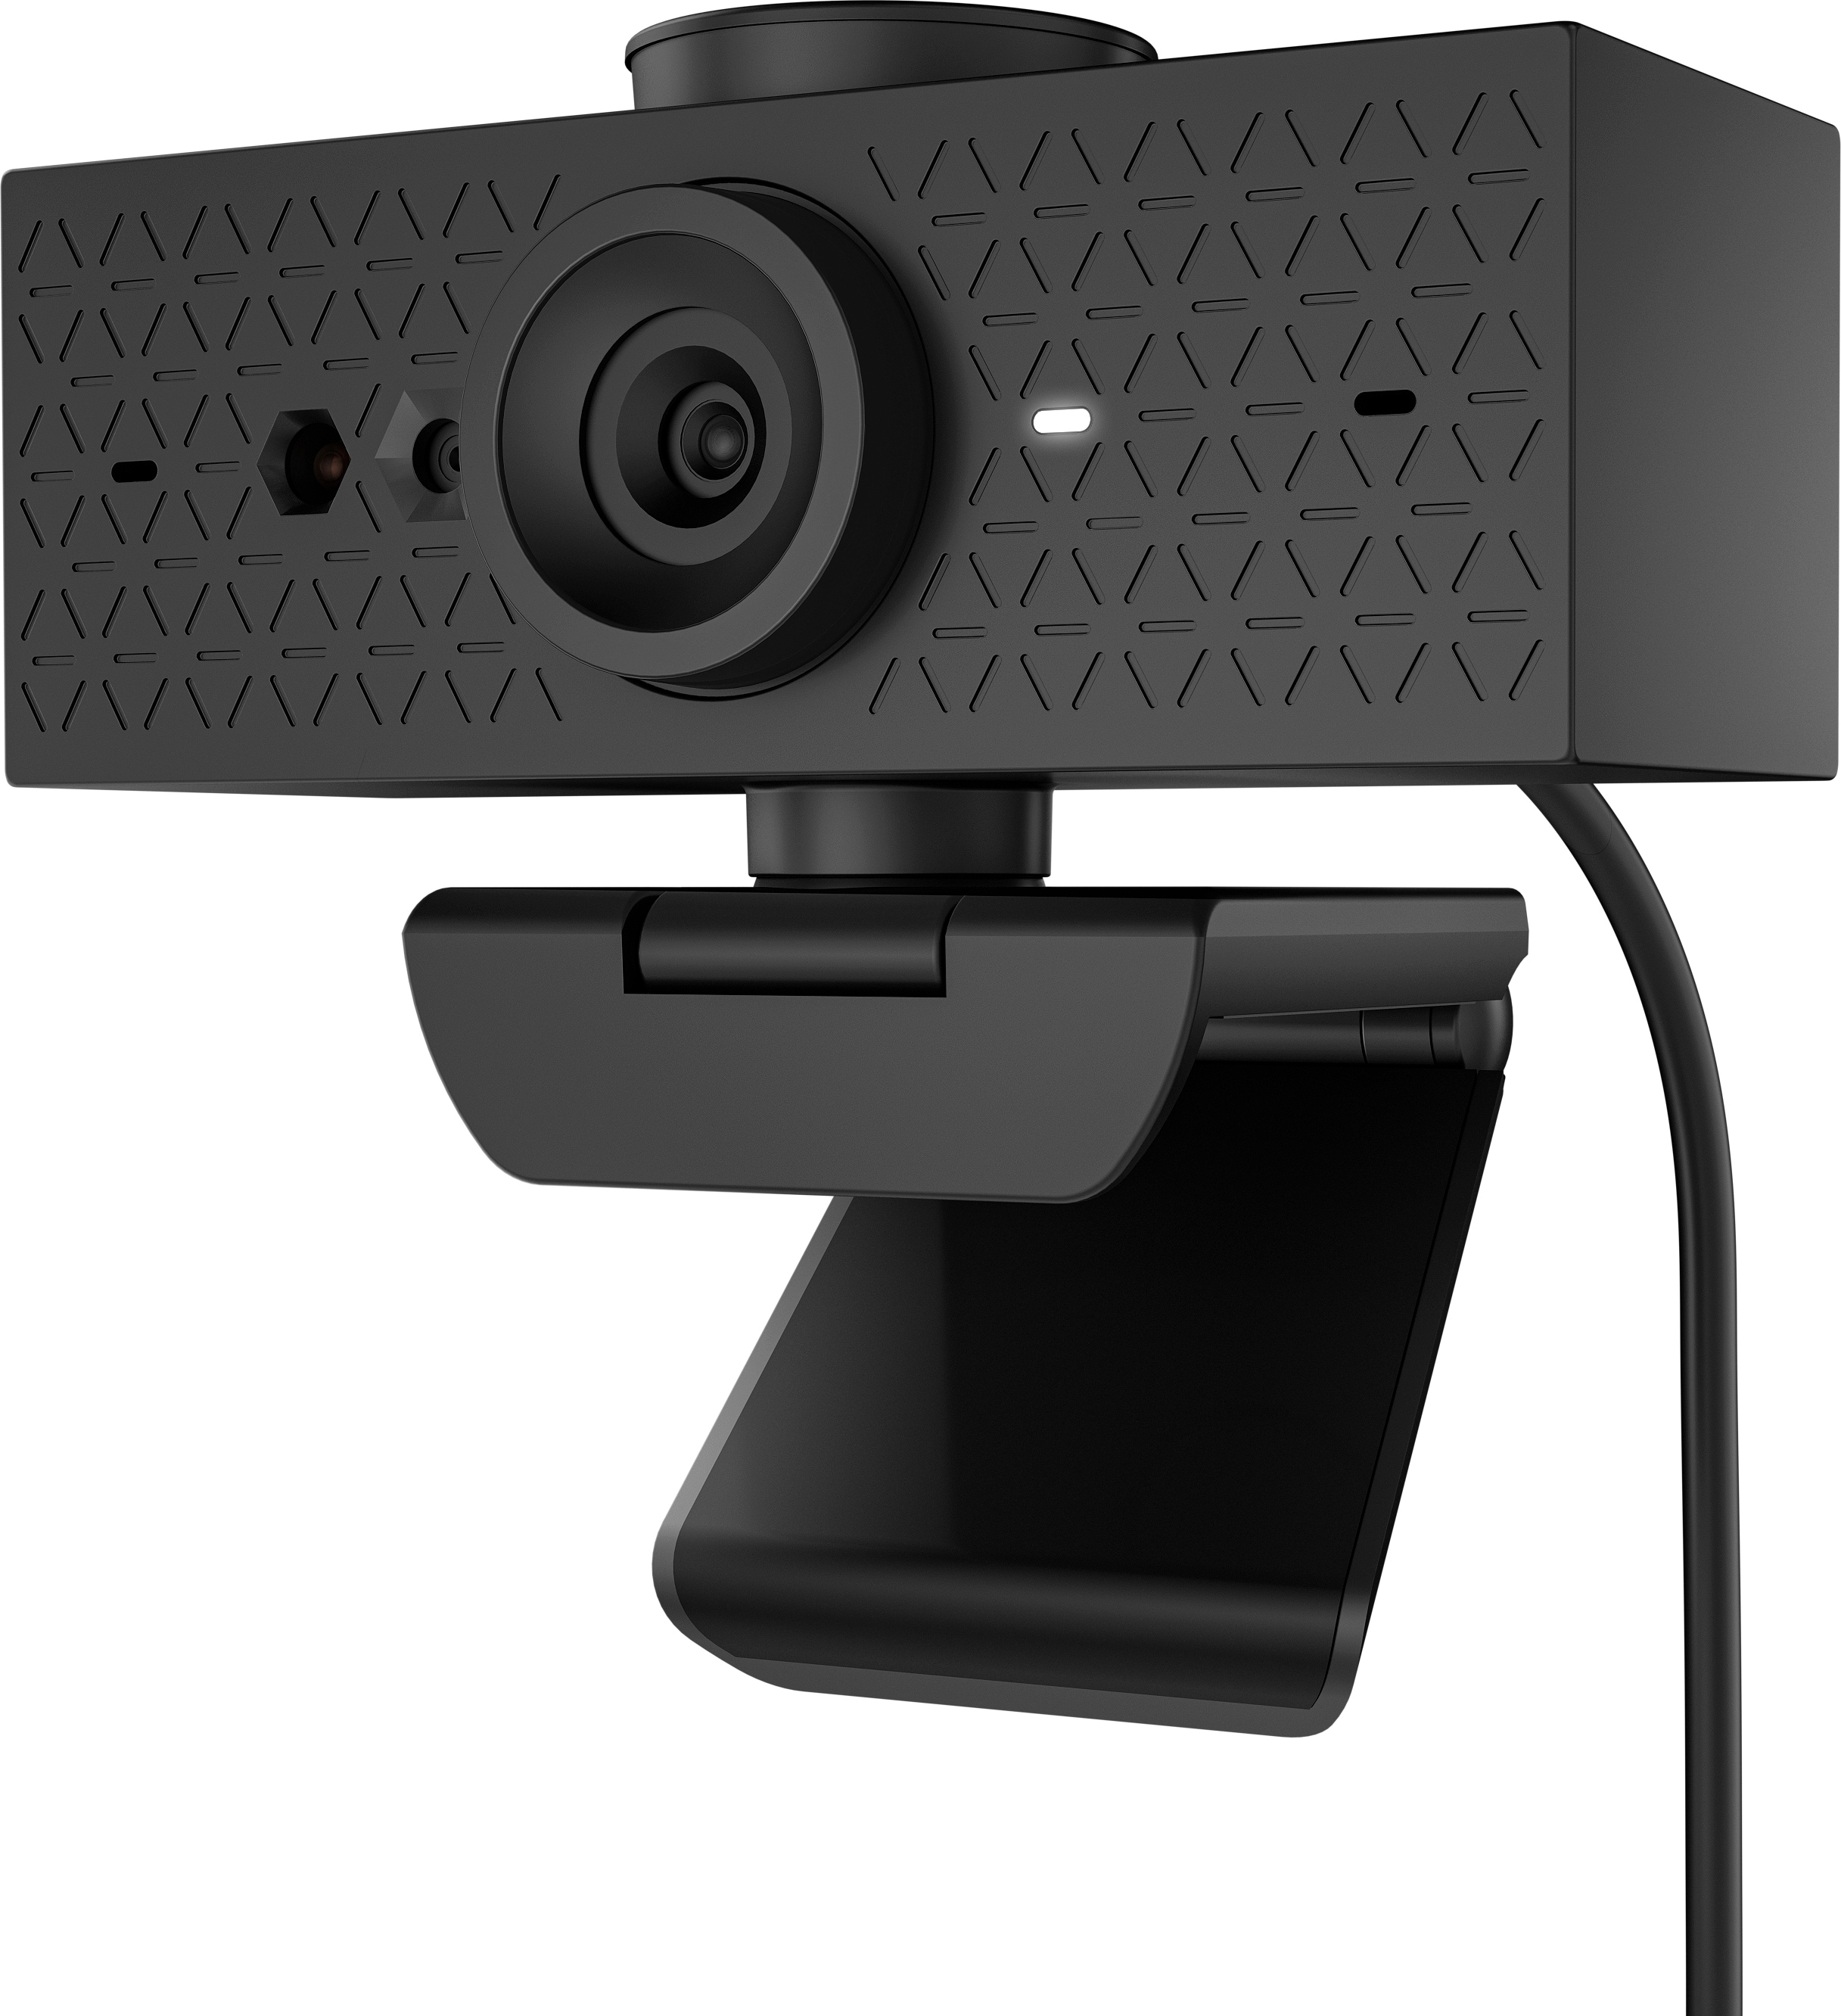 620 FHD Webcam HP